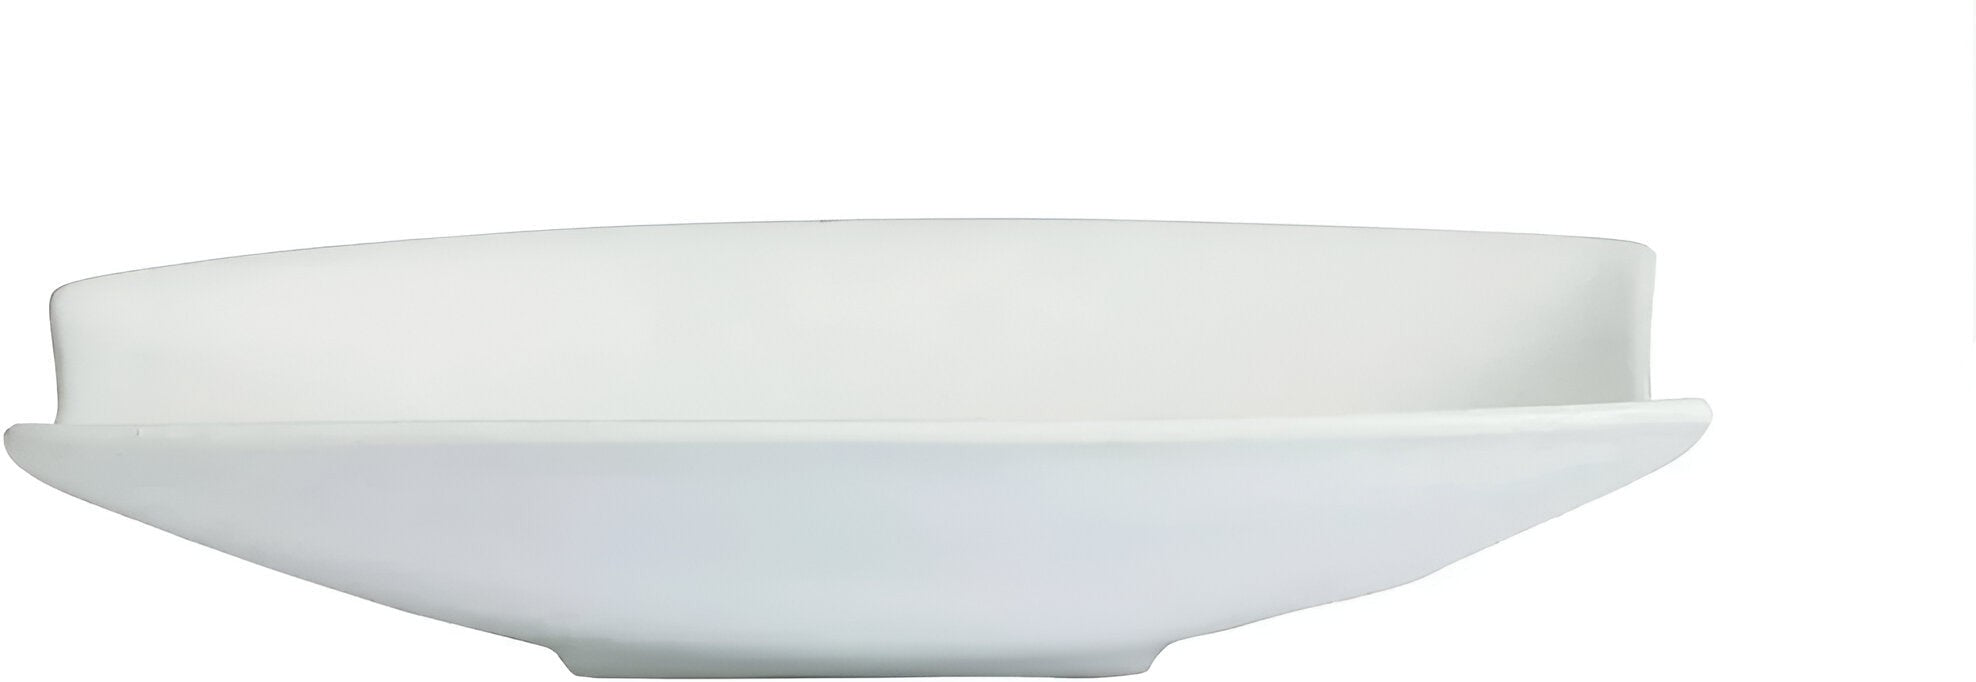 Bugambilia - Classic 134.4 Oz Large Rectangular White Fruit Bowl With Lip With Elegantly Textured - FUL04WW